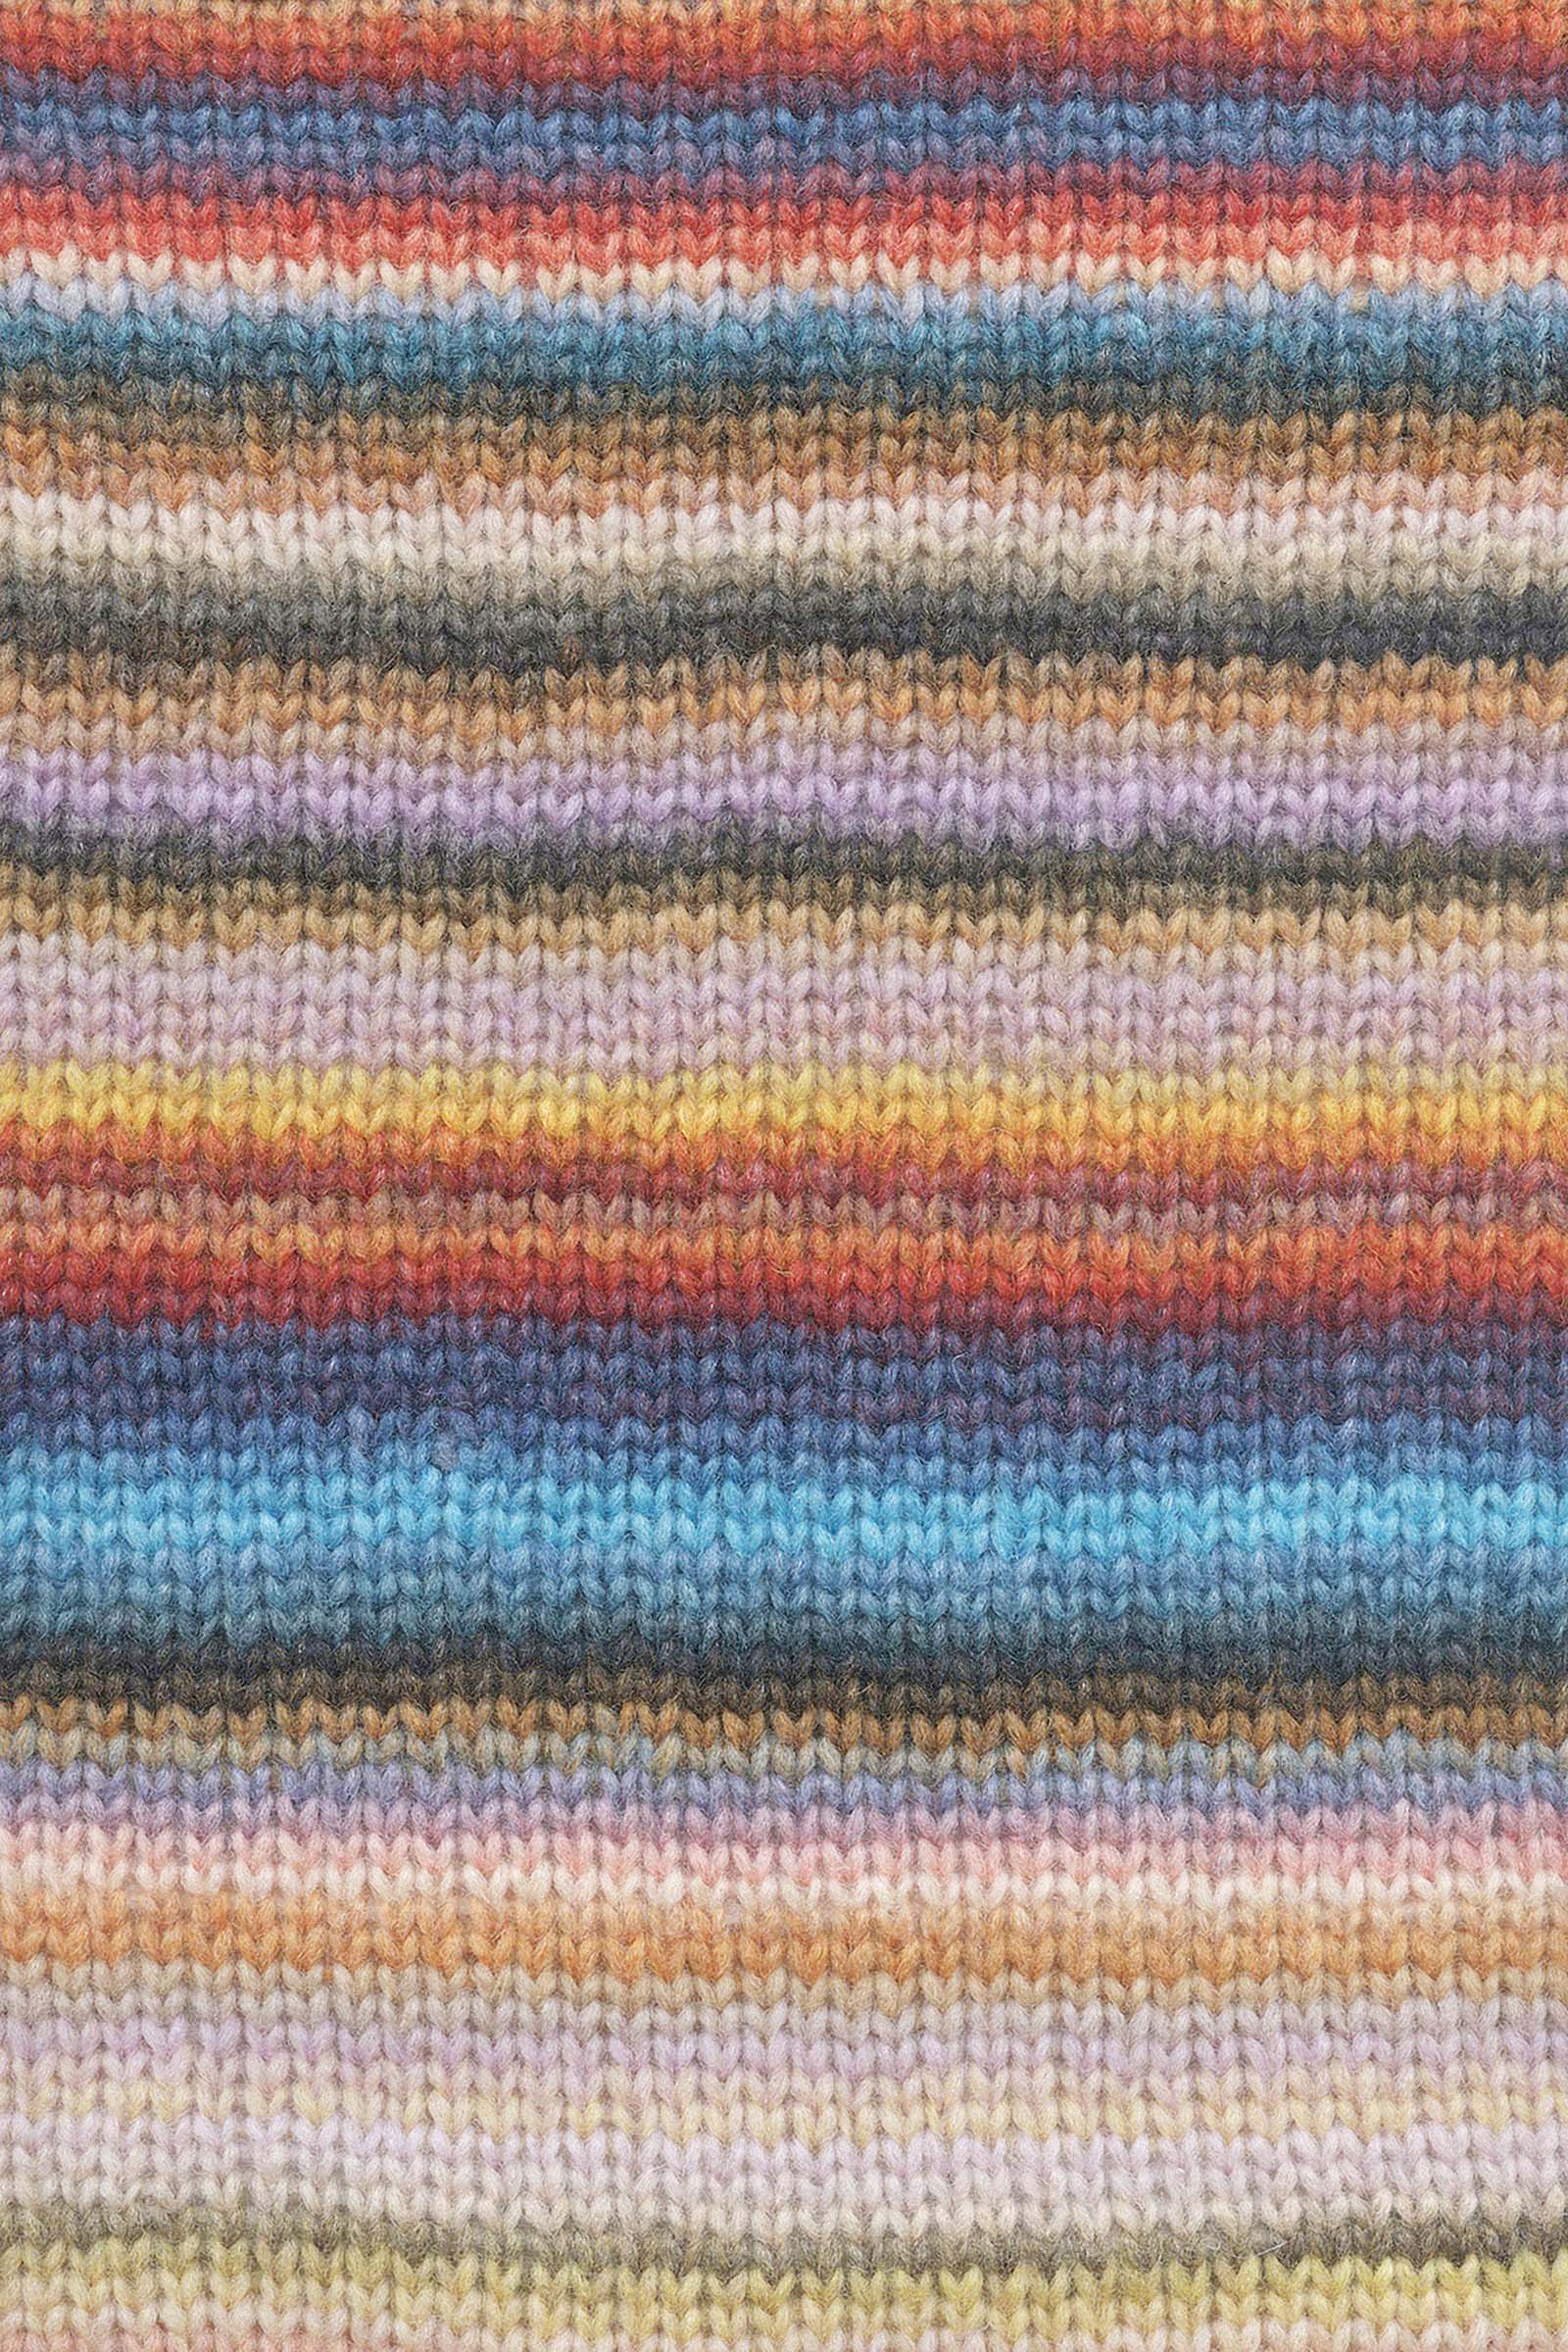 Cloud Crochet Scarf Kit